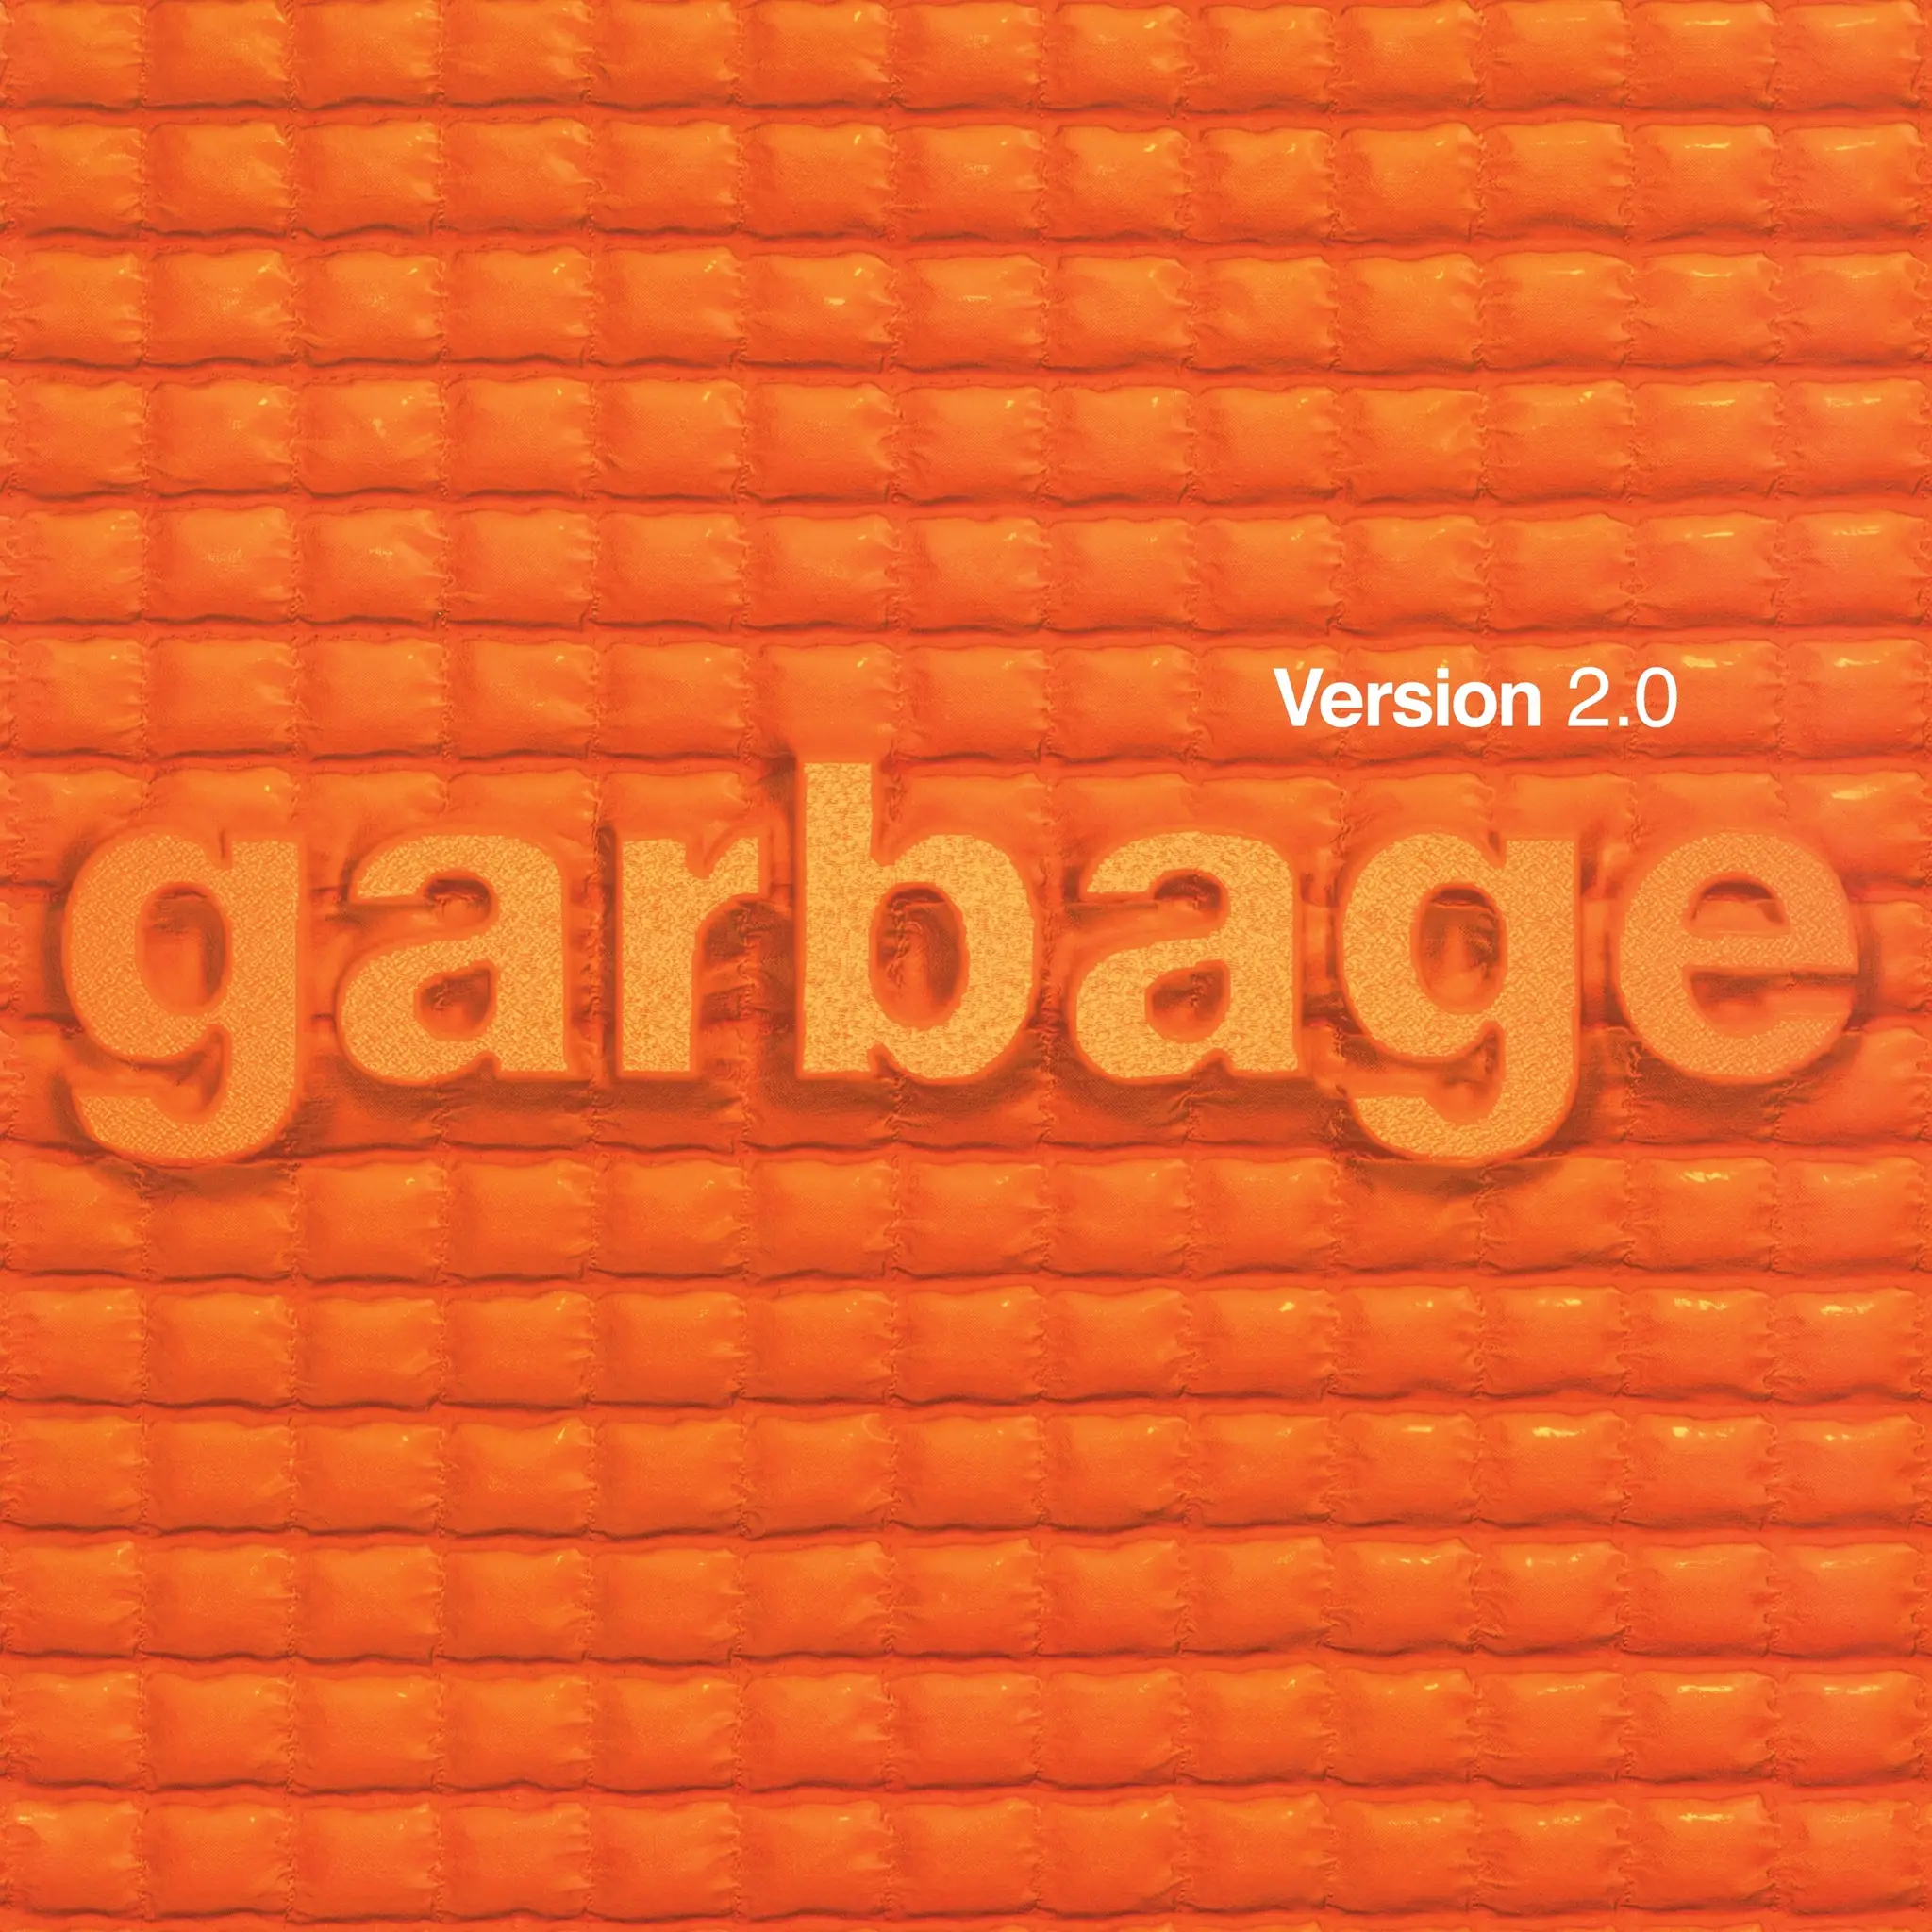 Garbage - Version 2.0 (National Album Day 2023) artwork